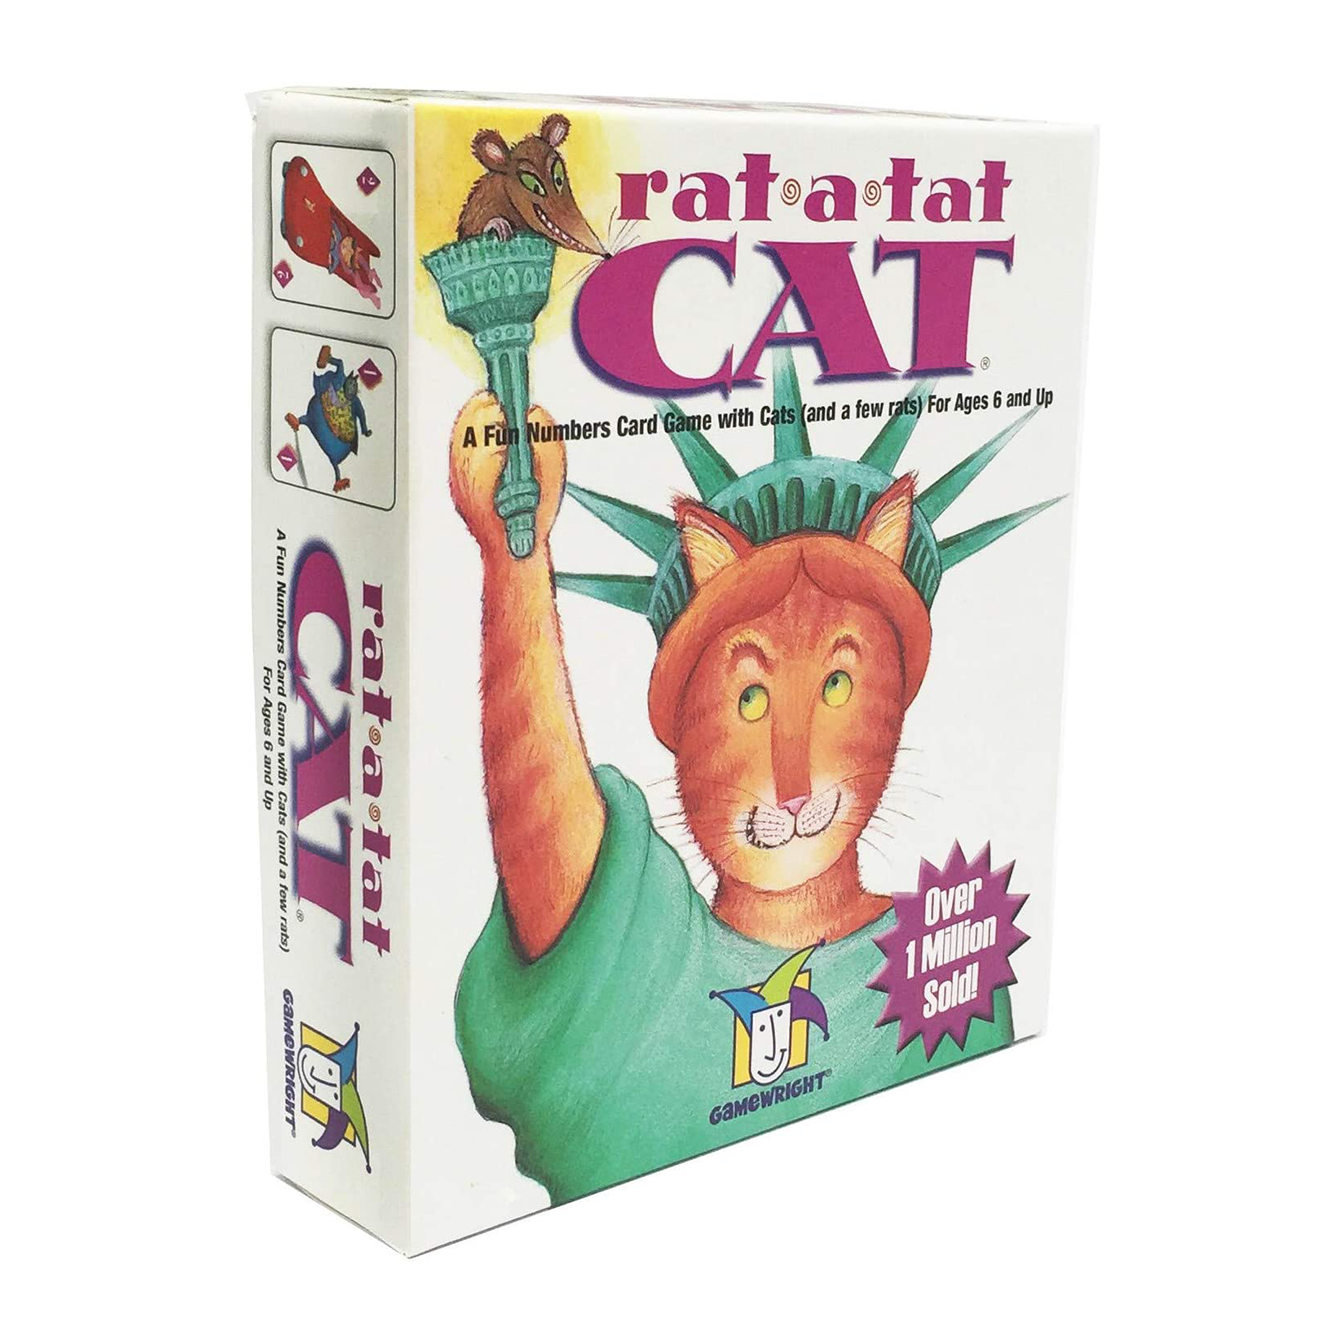 RAT A TAT CAT CARD GAME